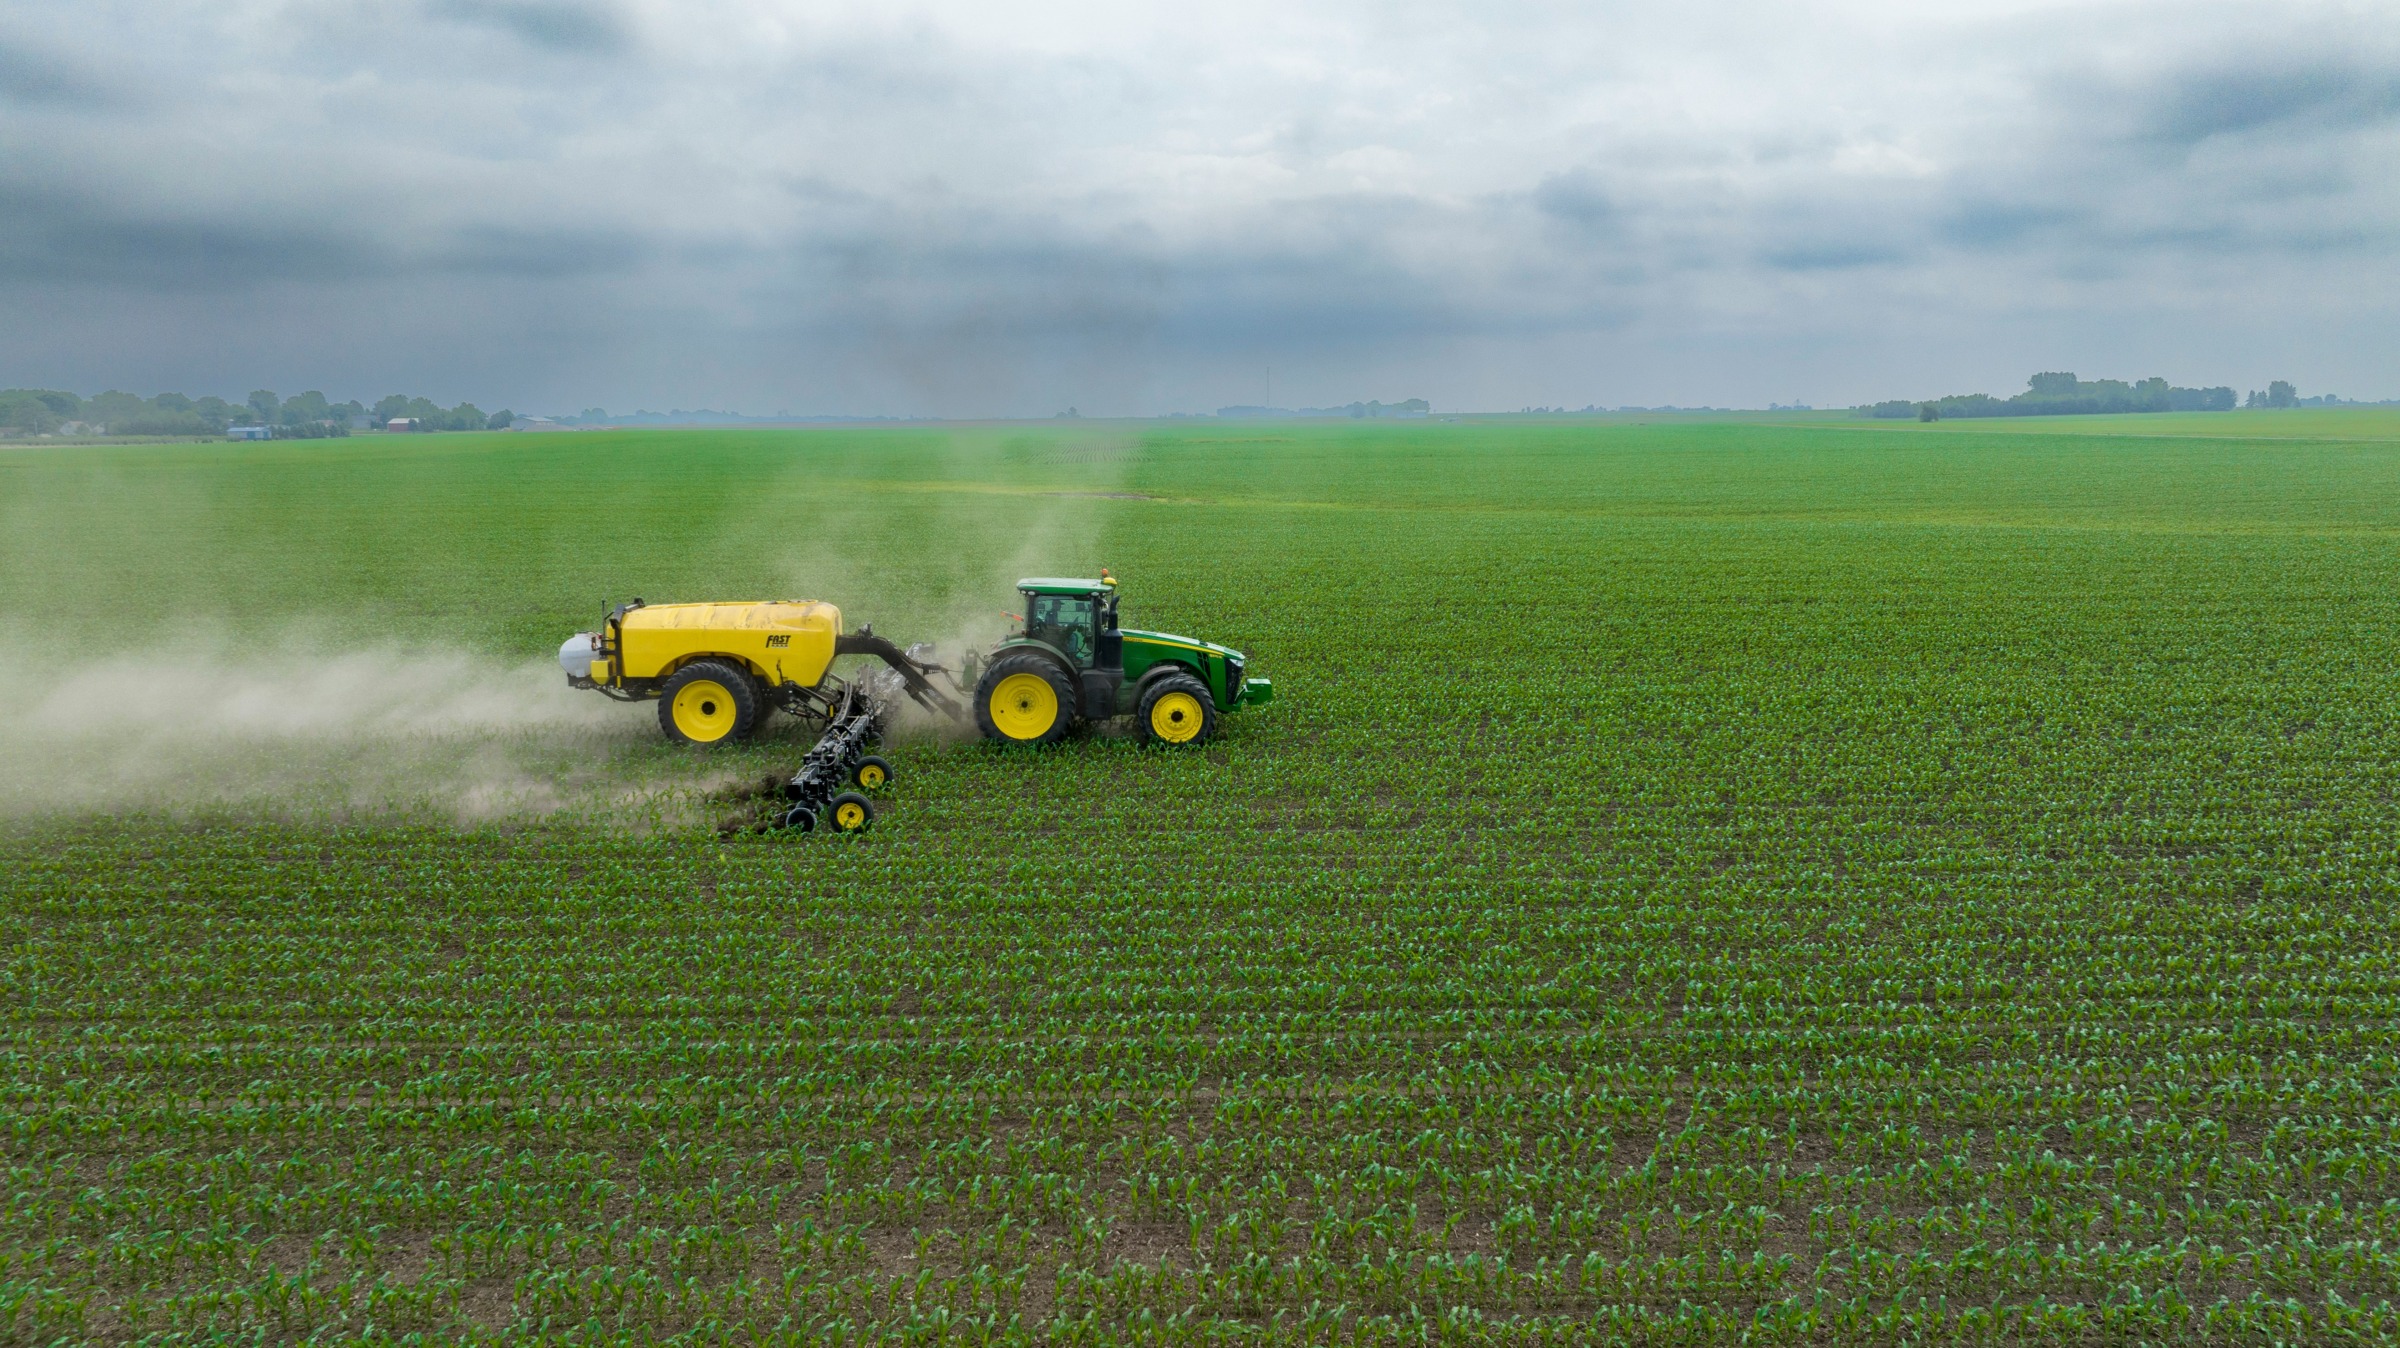 Green tractor spreading nitrogen on a field